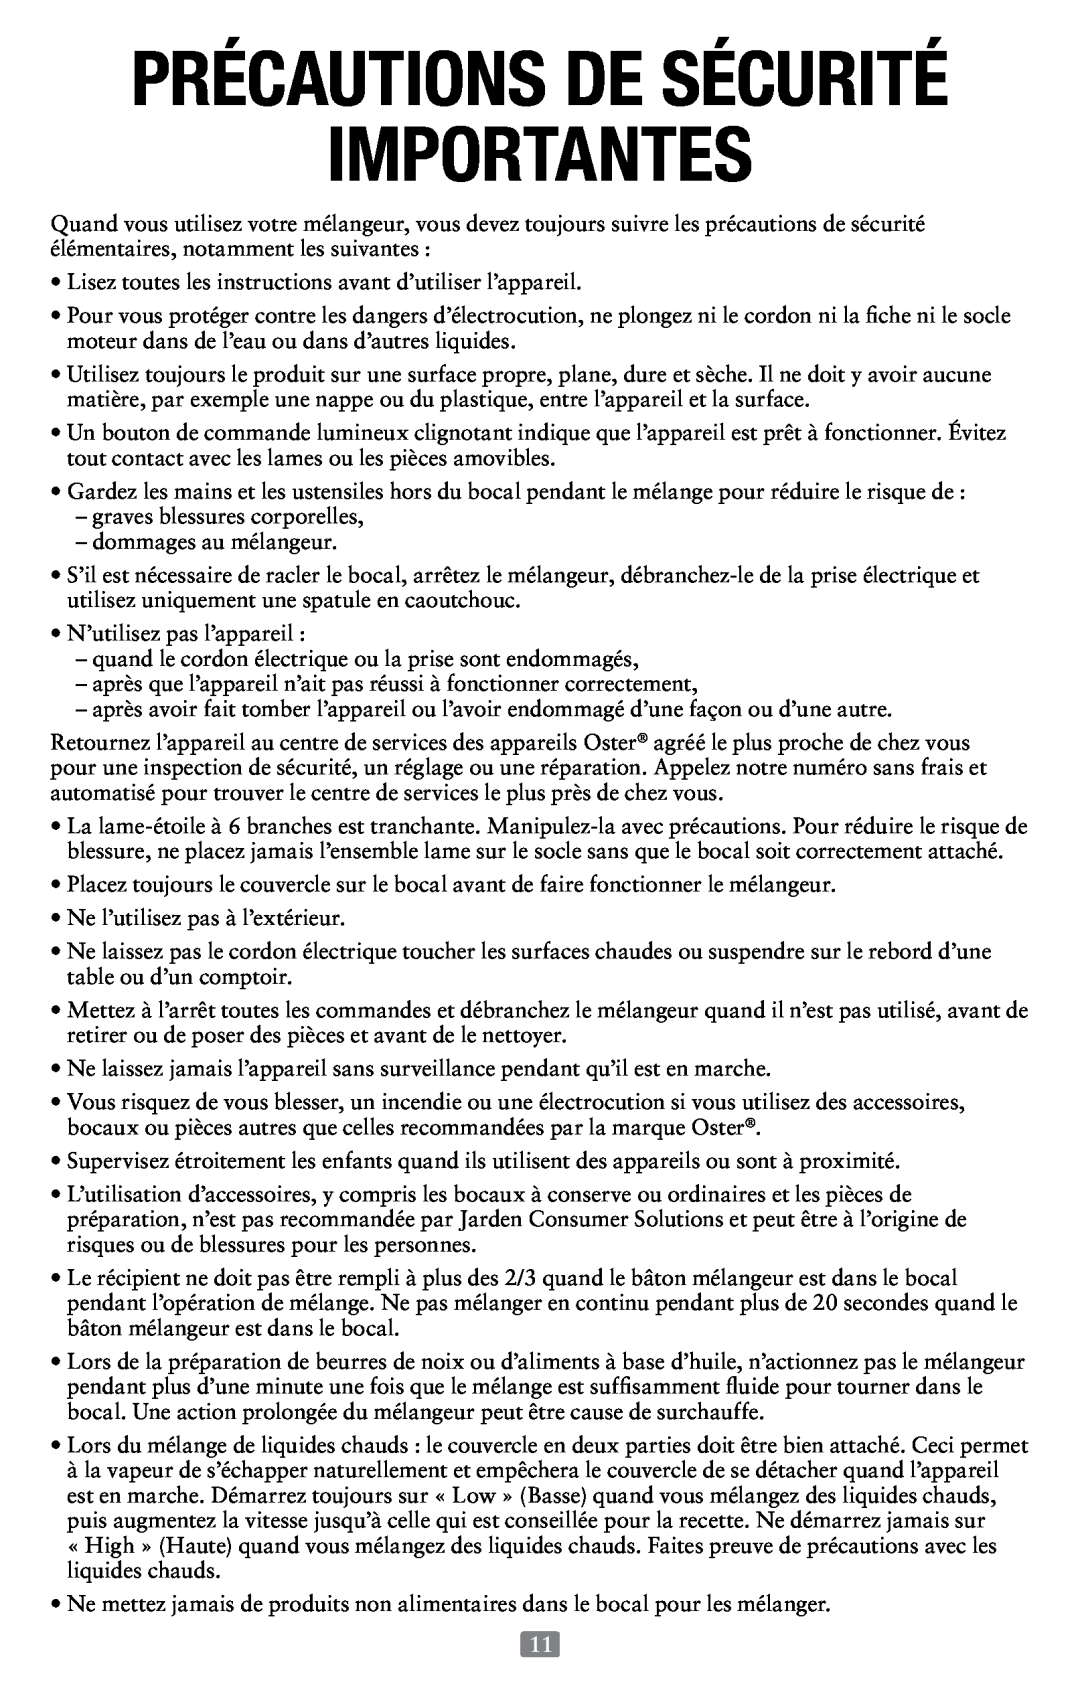 Oster Versa Performance Blender, 155876 user manual Importantes, Précautions De Sécurité 